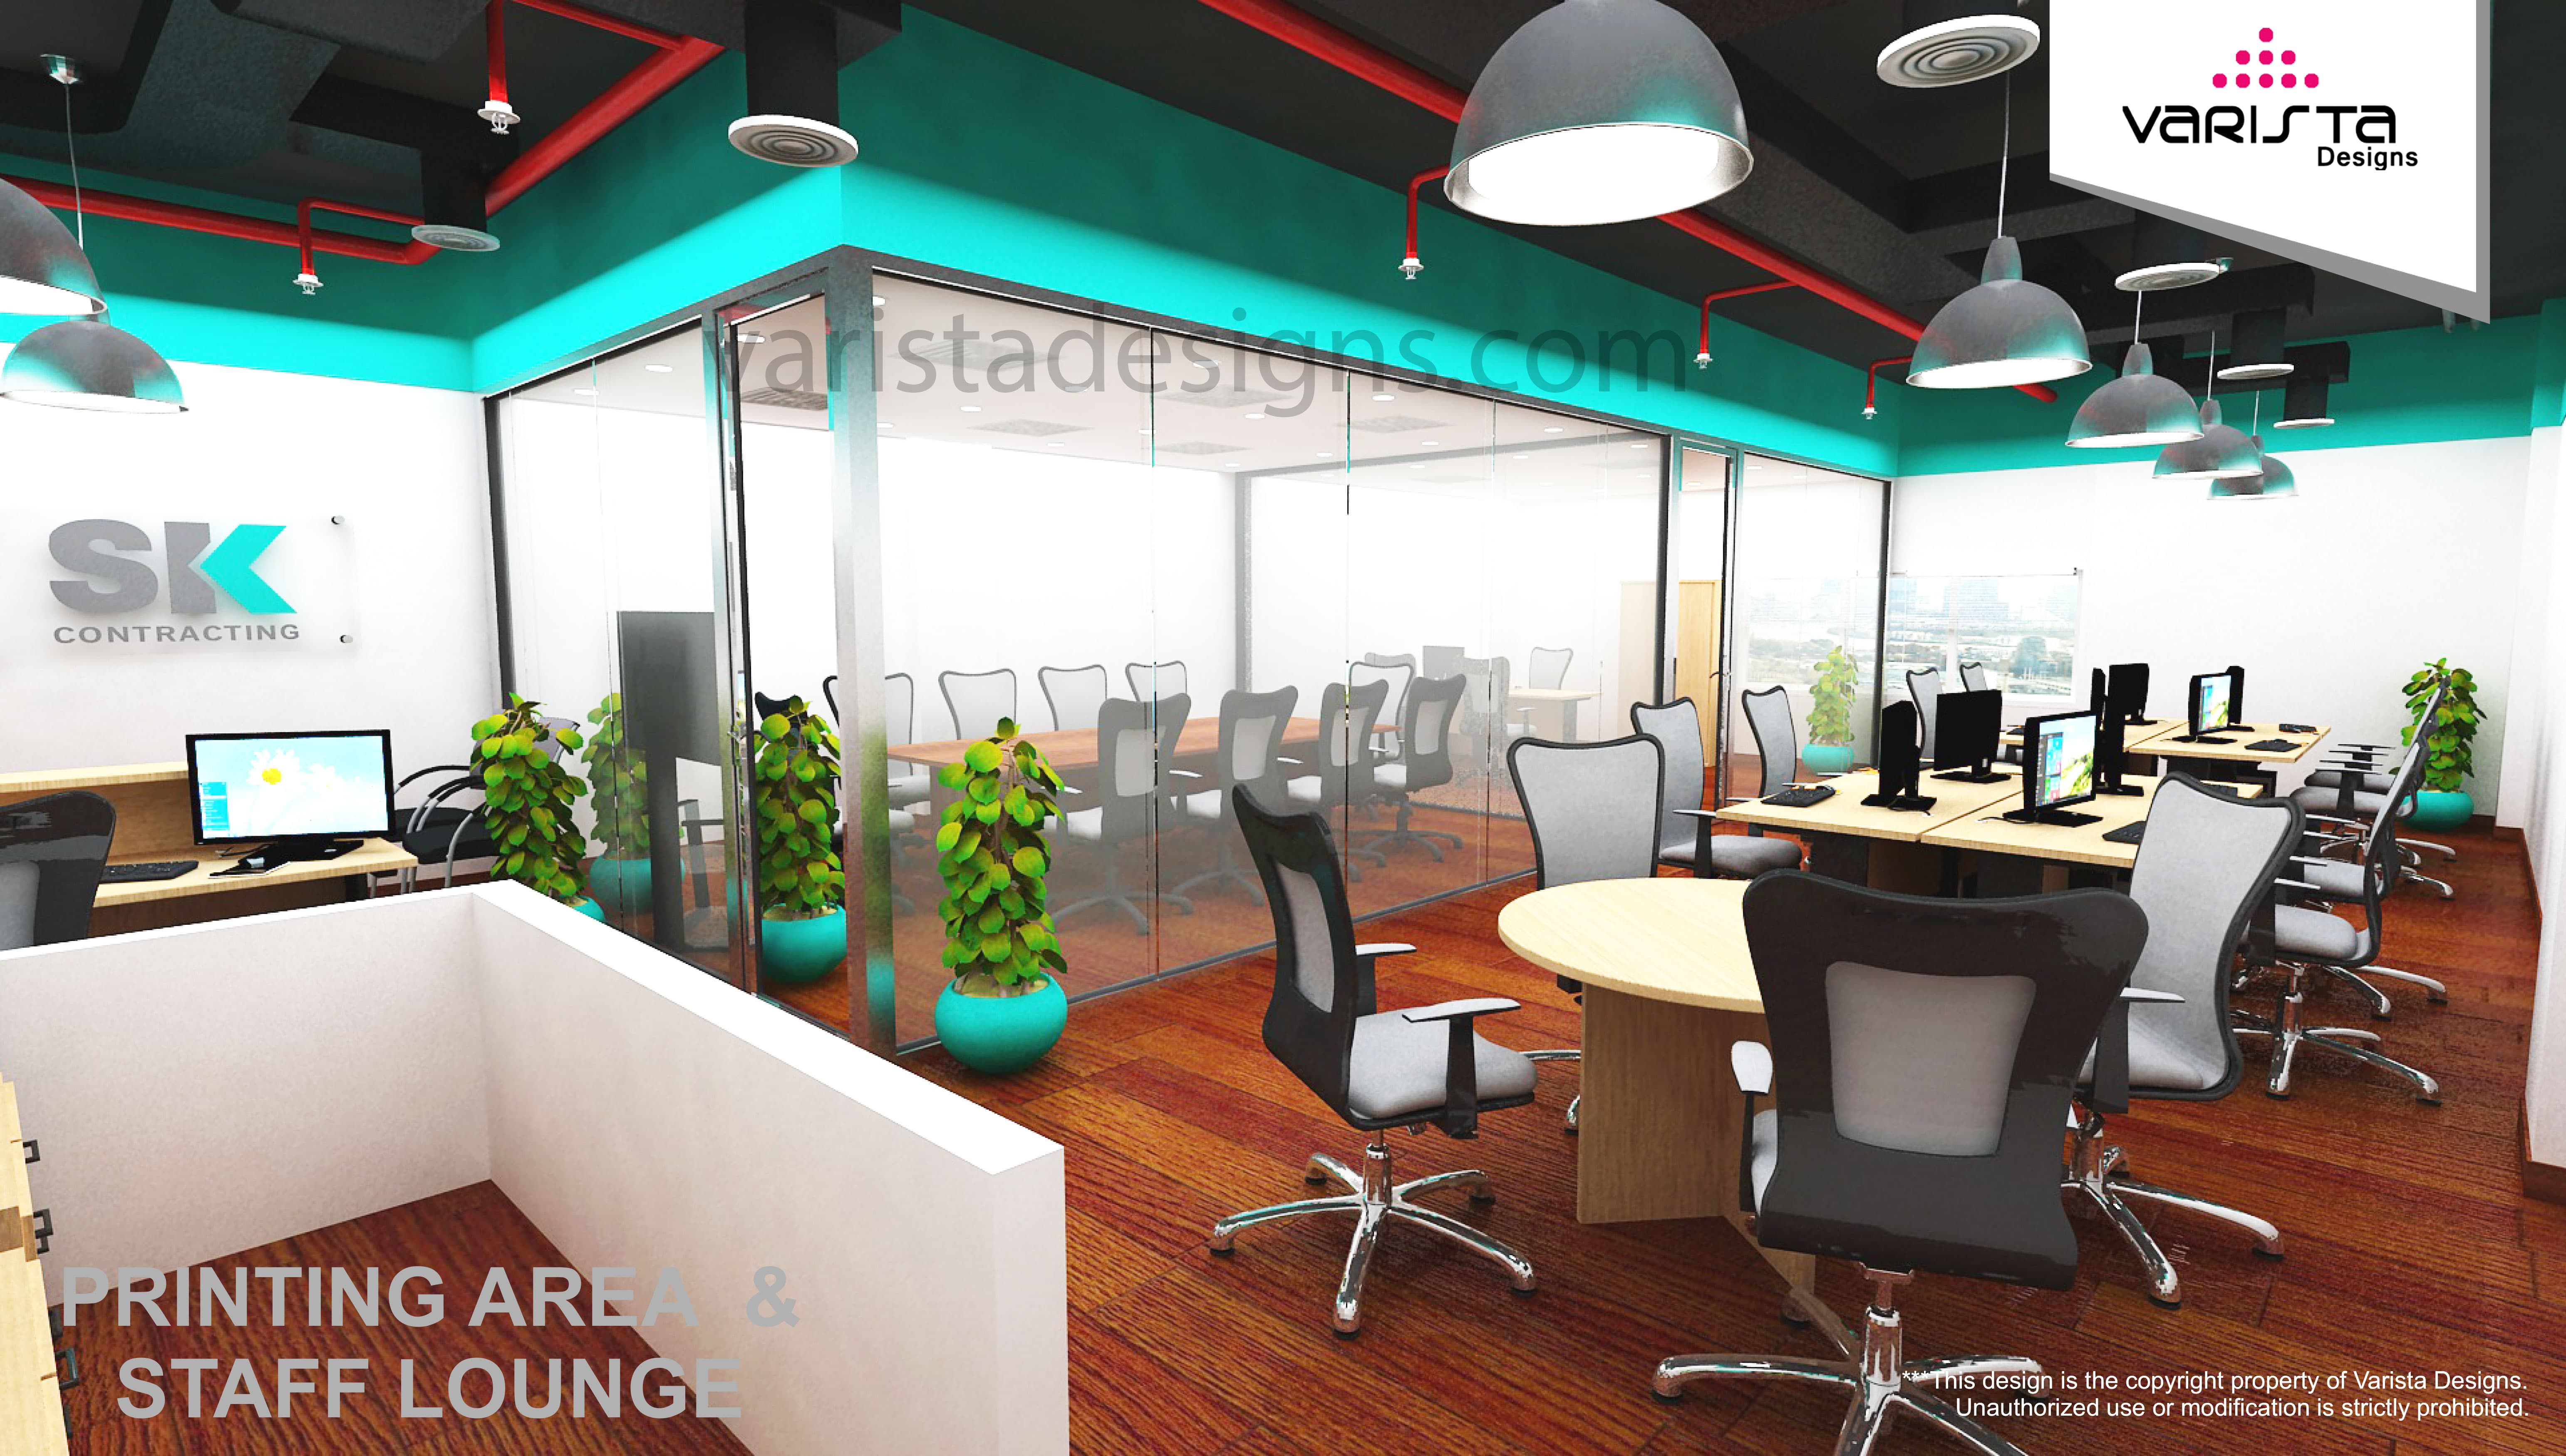 SK CONTRACTING office interior design fitout in dubai